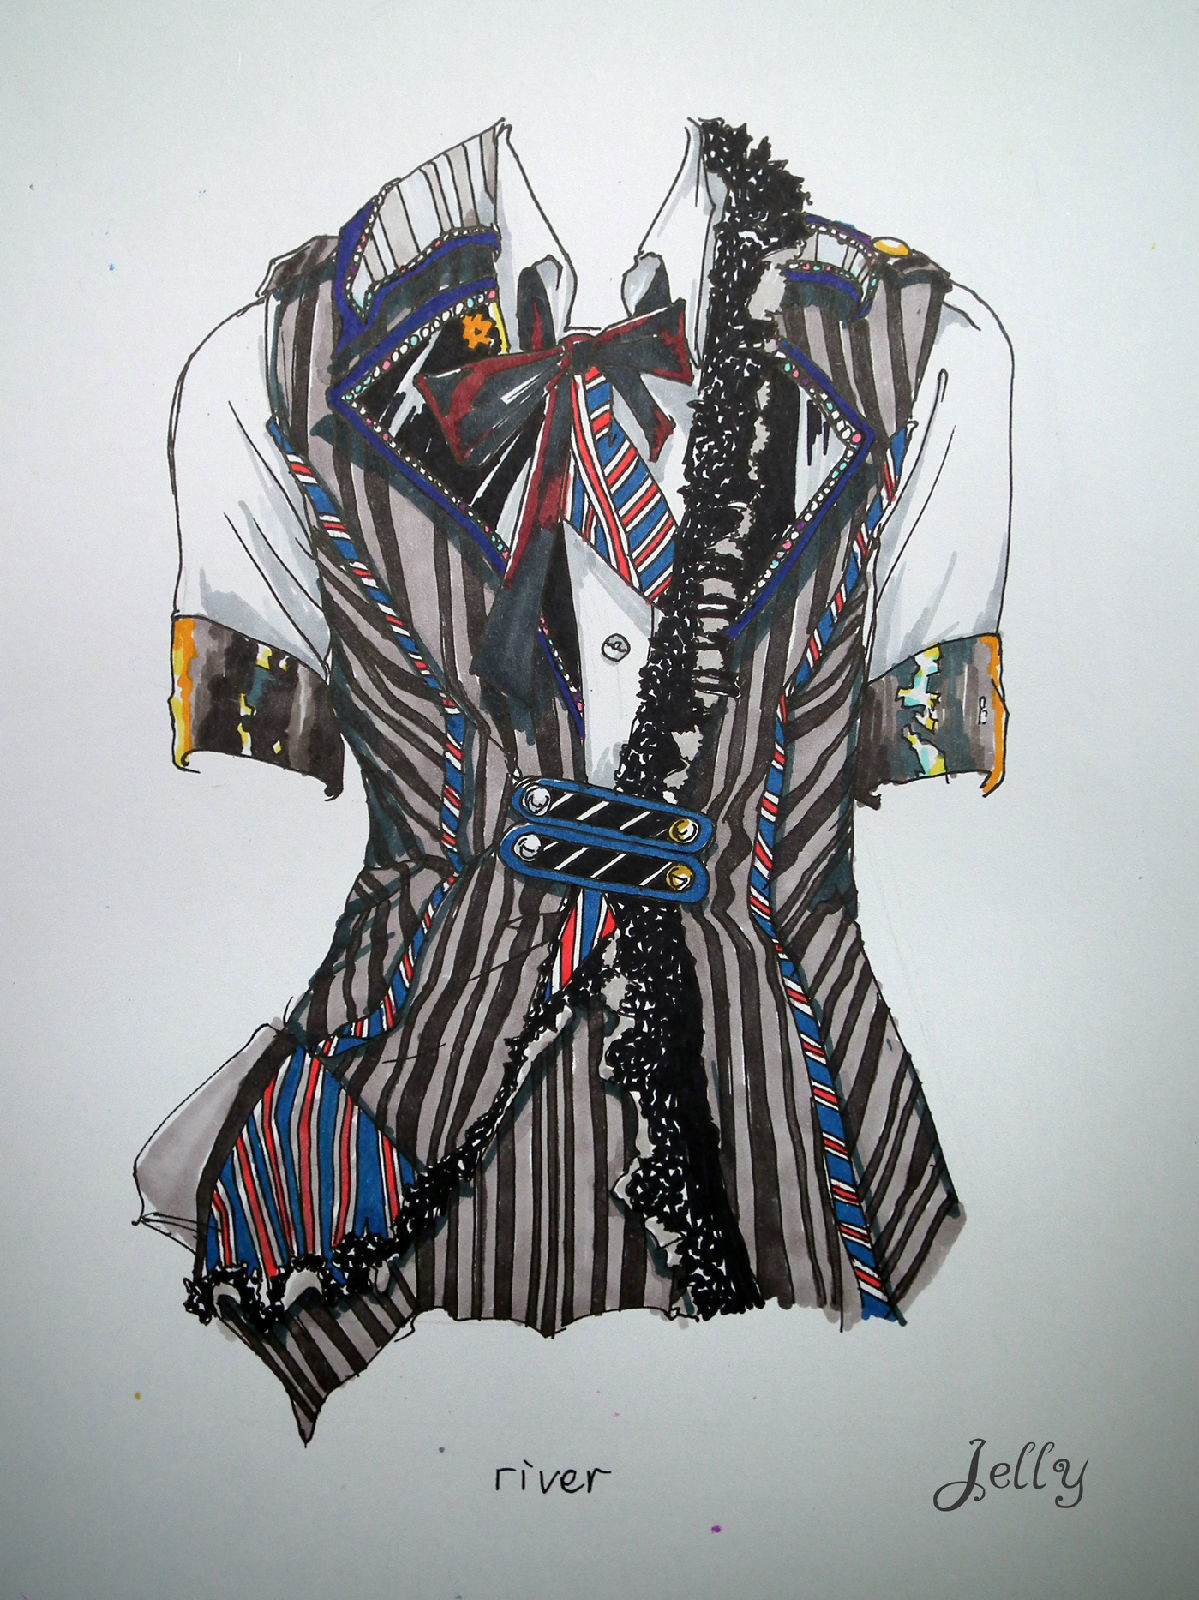 超强服装设计手绘图 akb48可爱的百变演出服